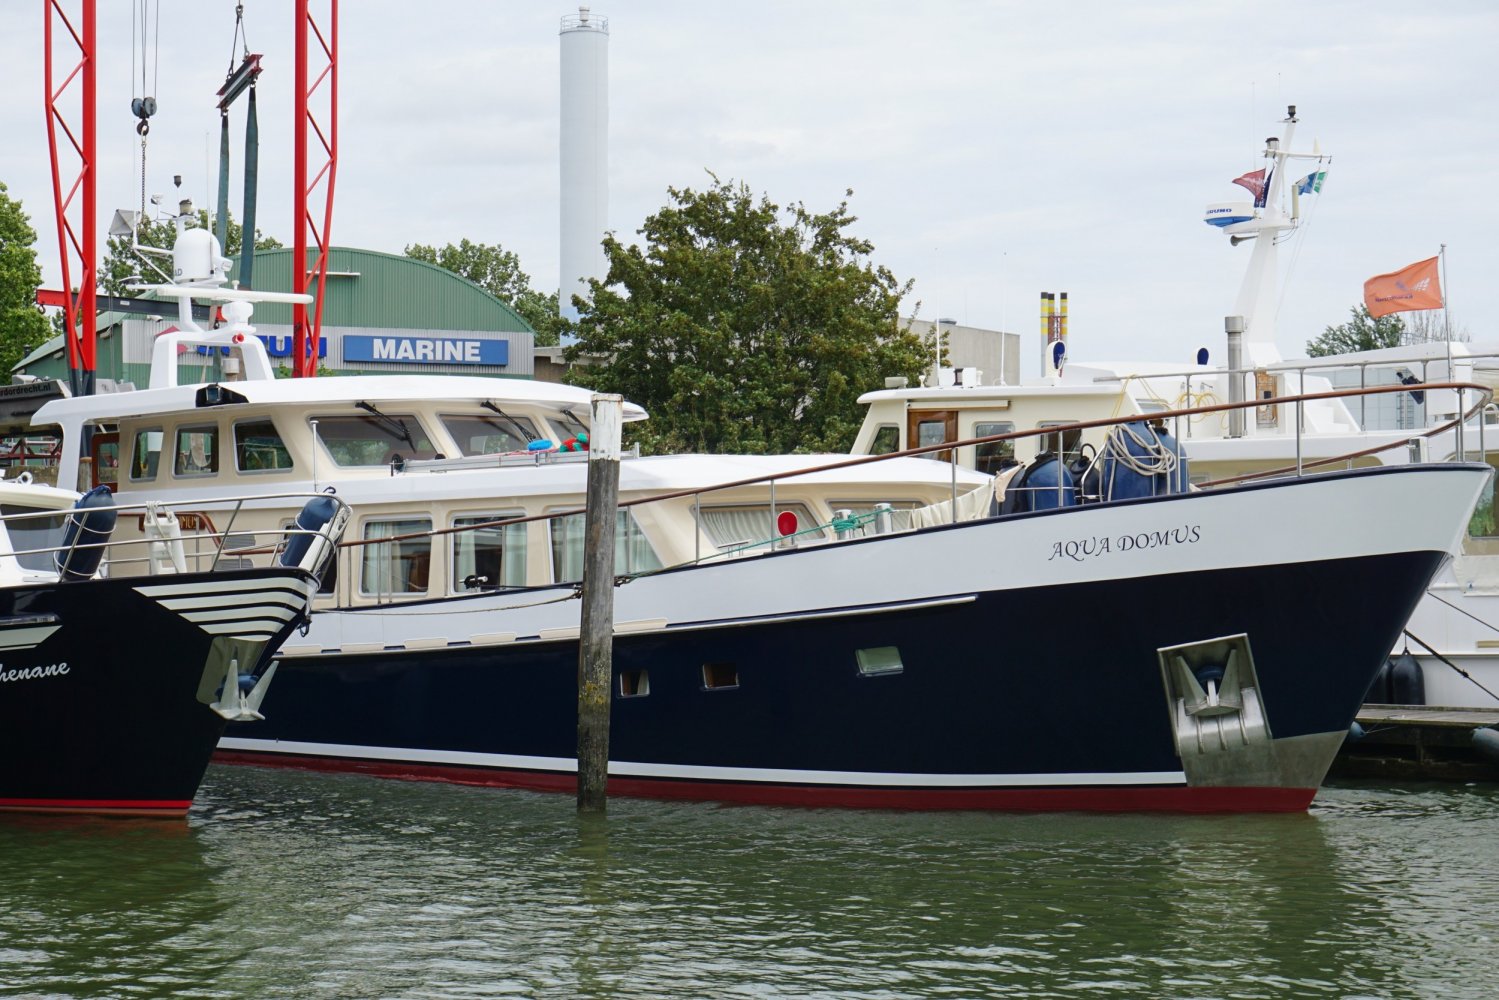 Meting stem Gepensioneerd Luxe Motor Kotter 20m motorboot | White Whale Yachtbrokers